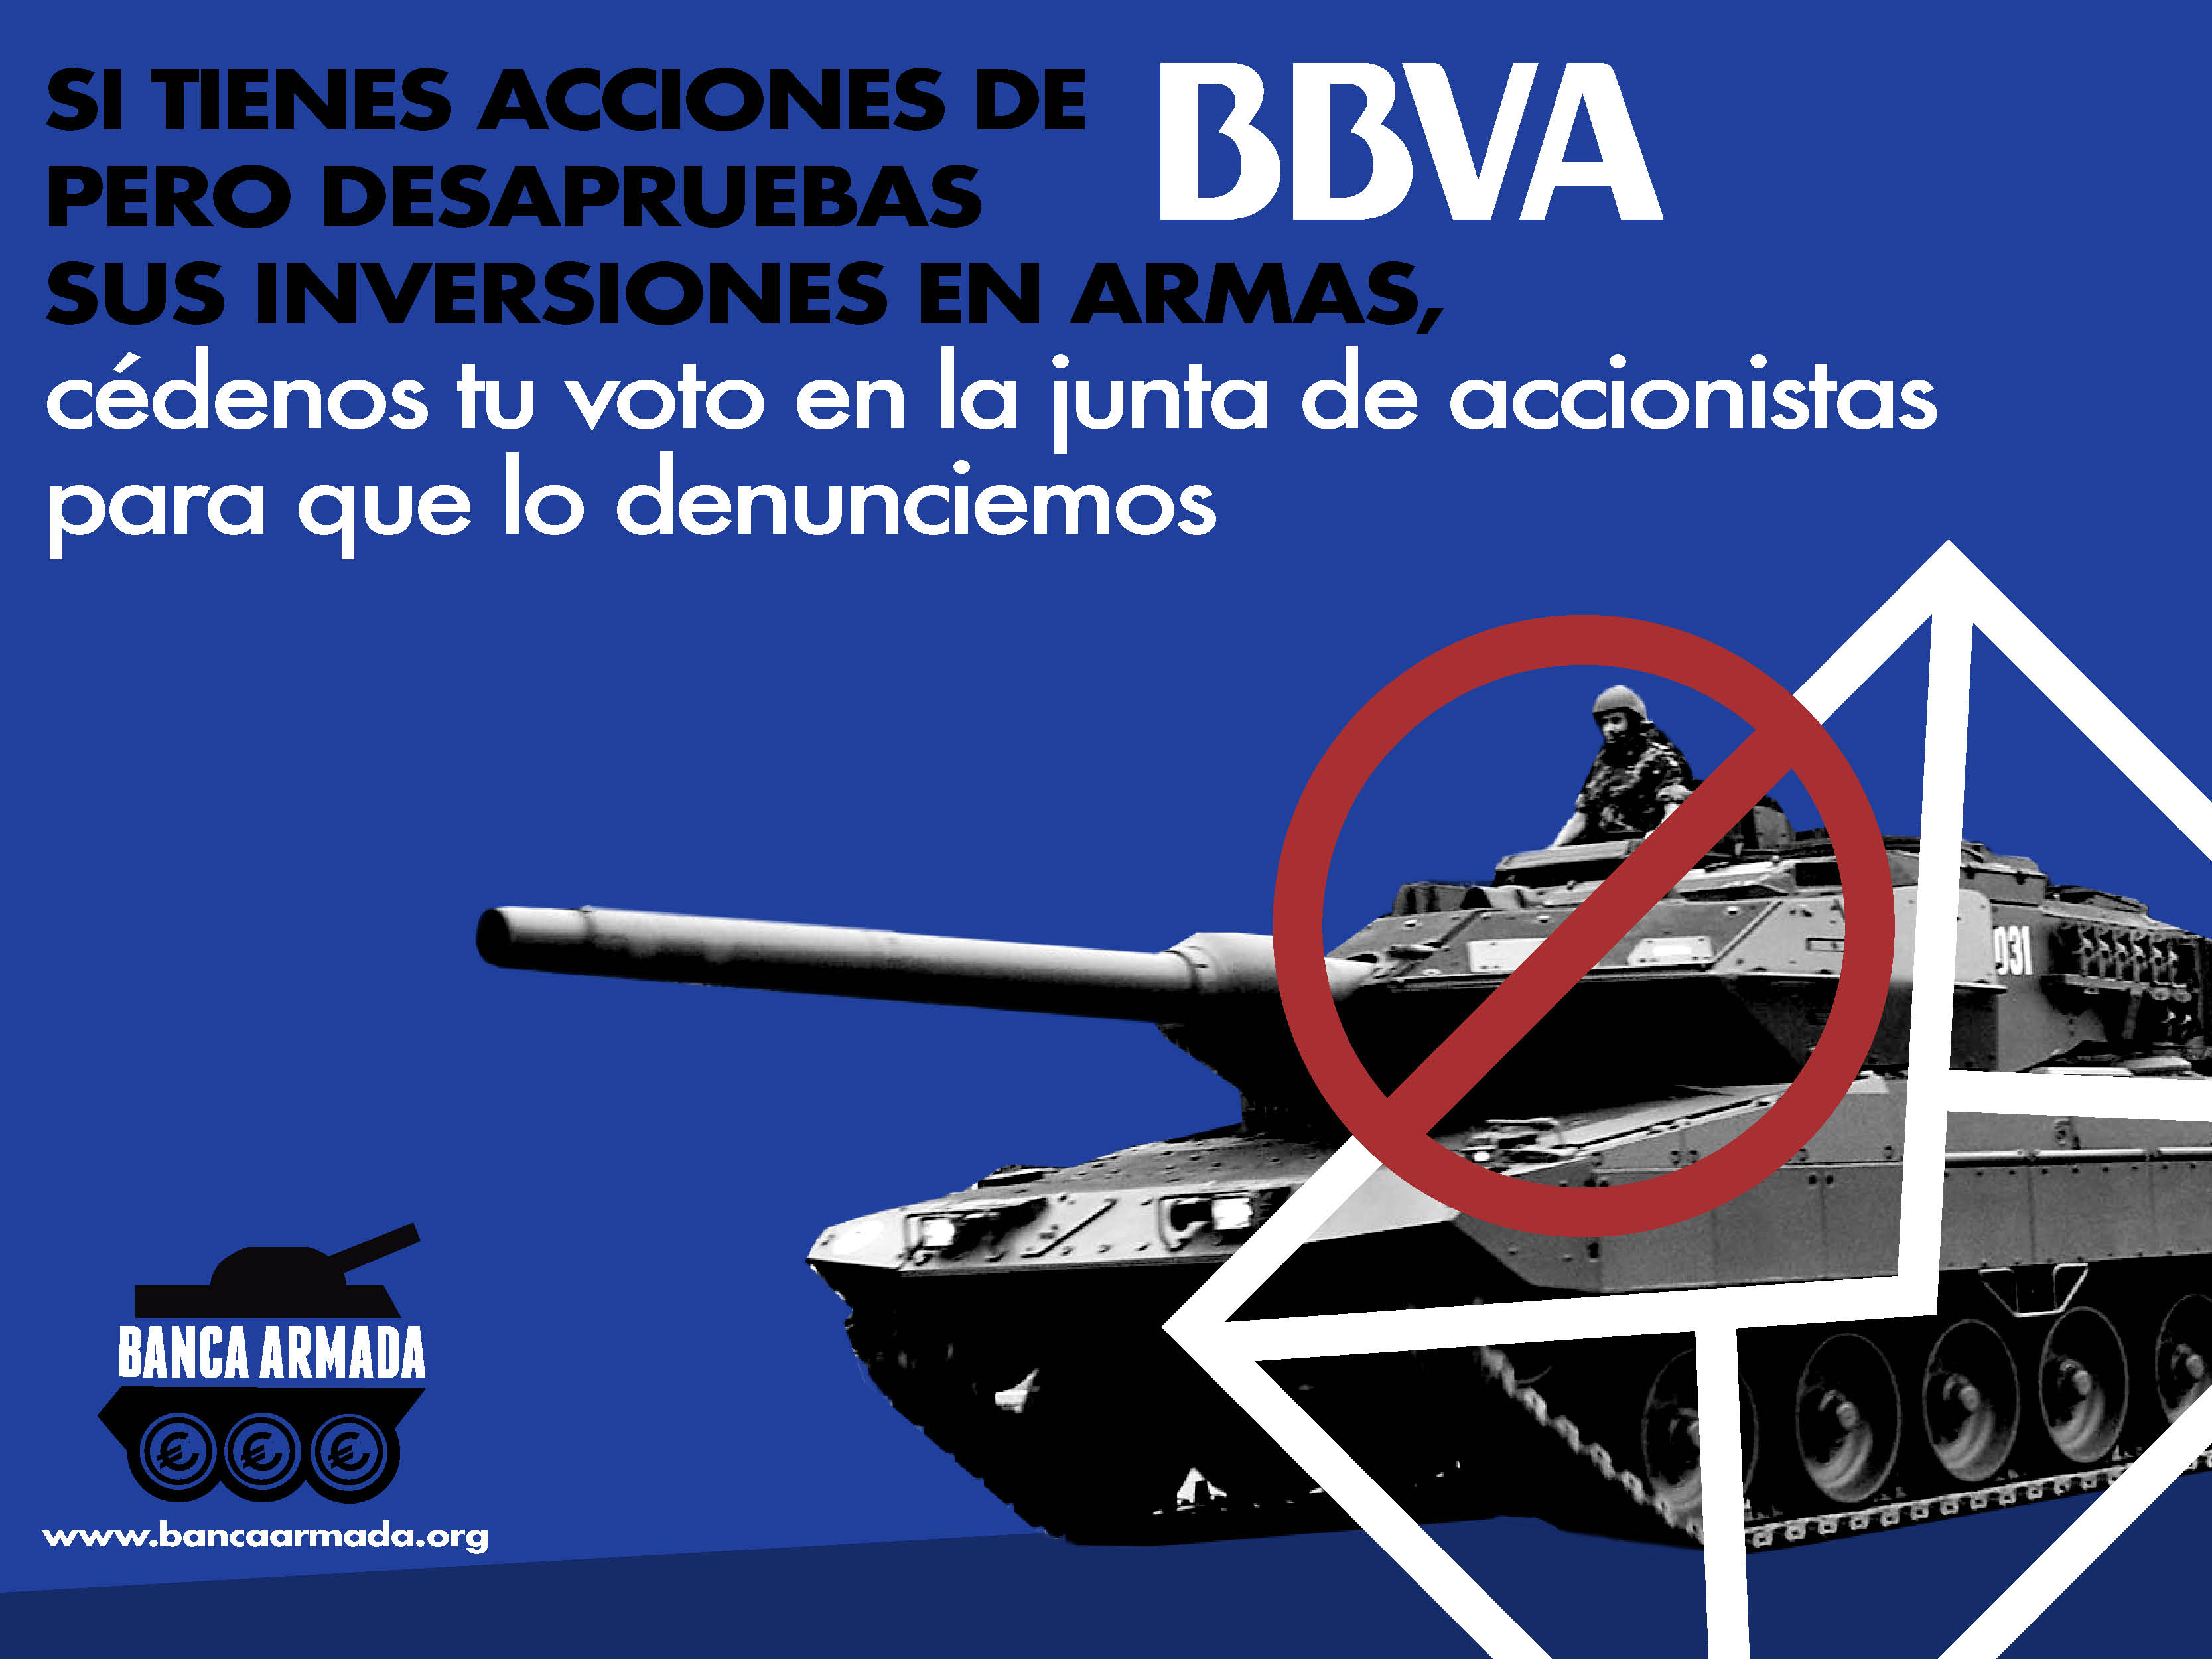 Petición de acciones para denunciar las inversiones en armas en la junta de accionistas 2019 de BBVA